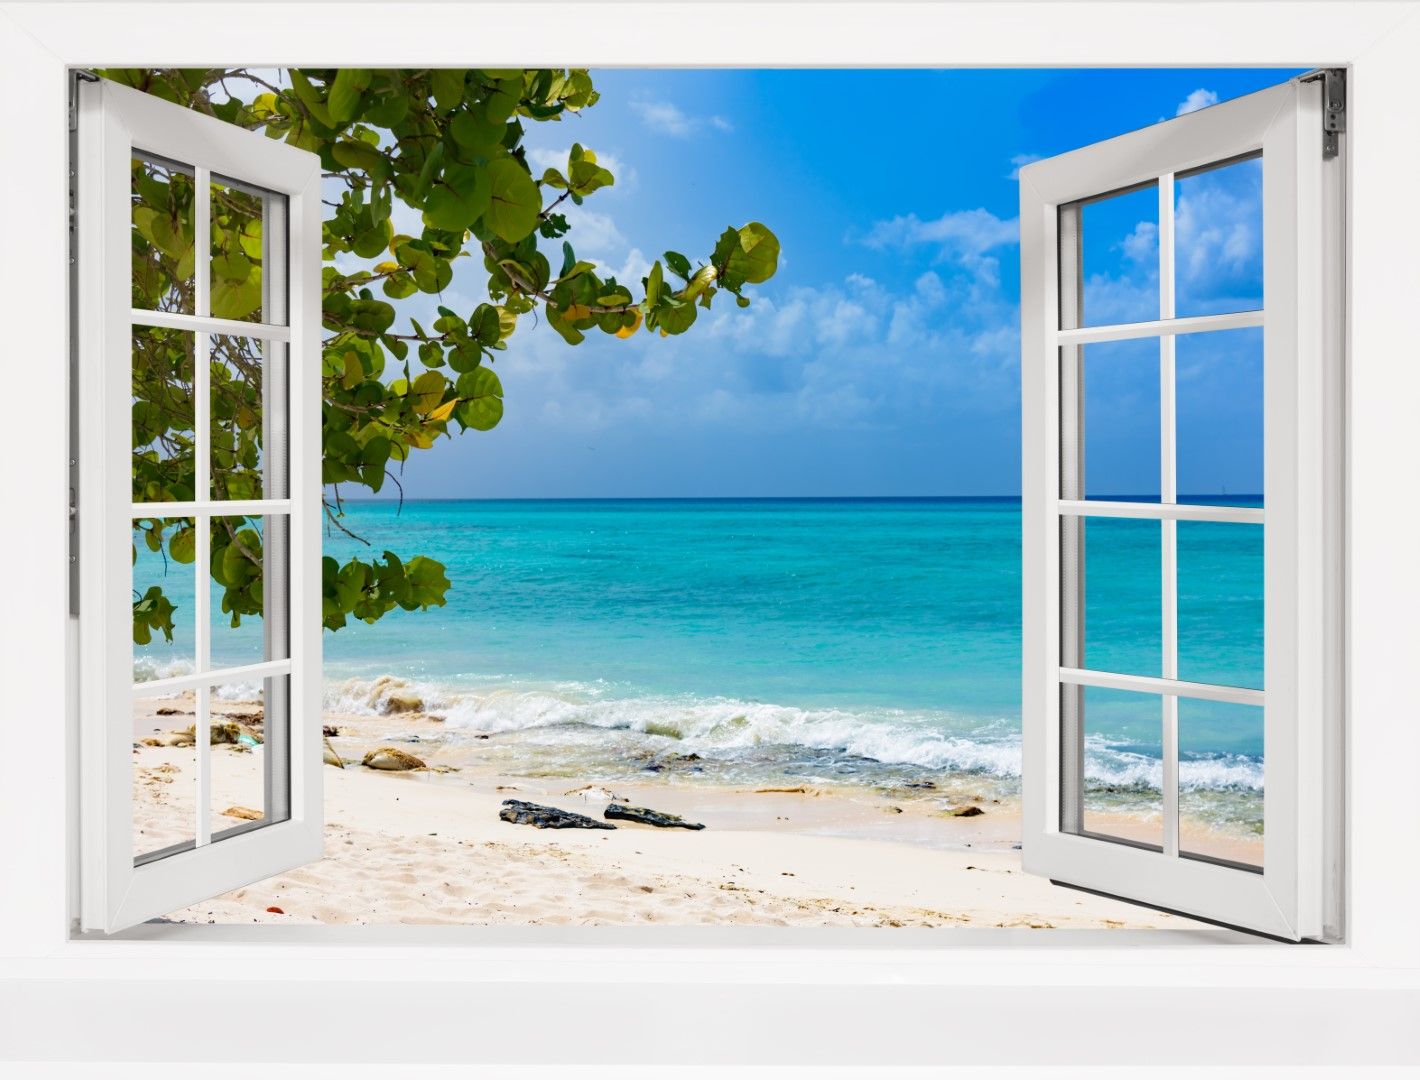 Chalet mit Fenster zum Meer s.jpg